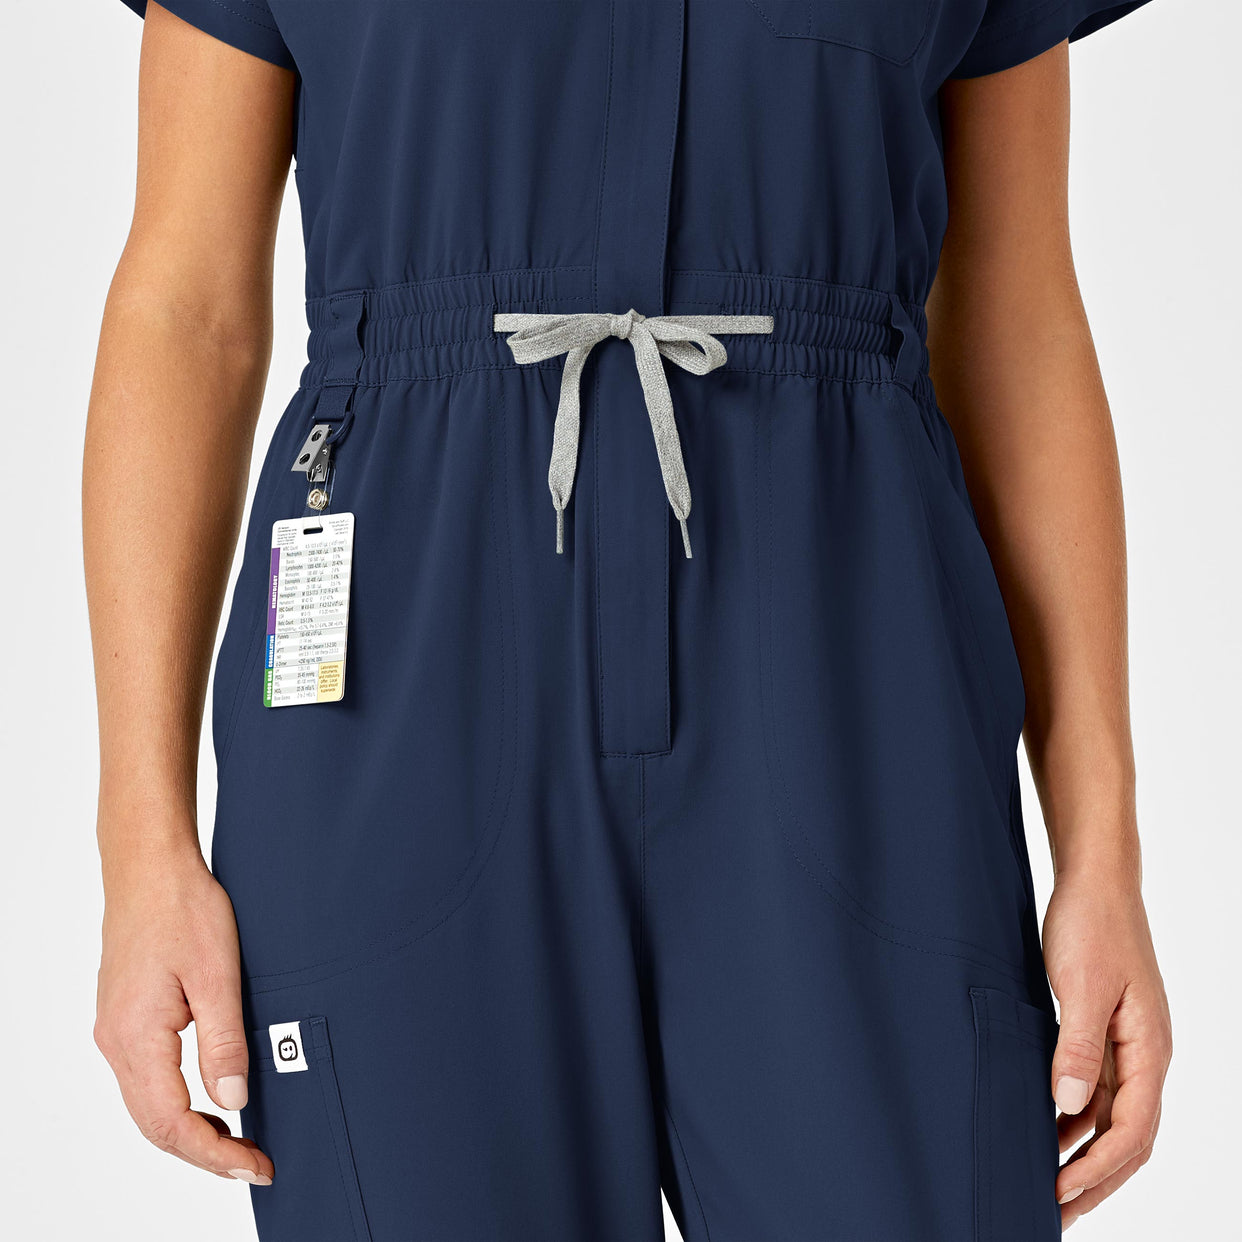 RENEW Women's Zip Front Jumpsuit - Navy